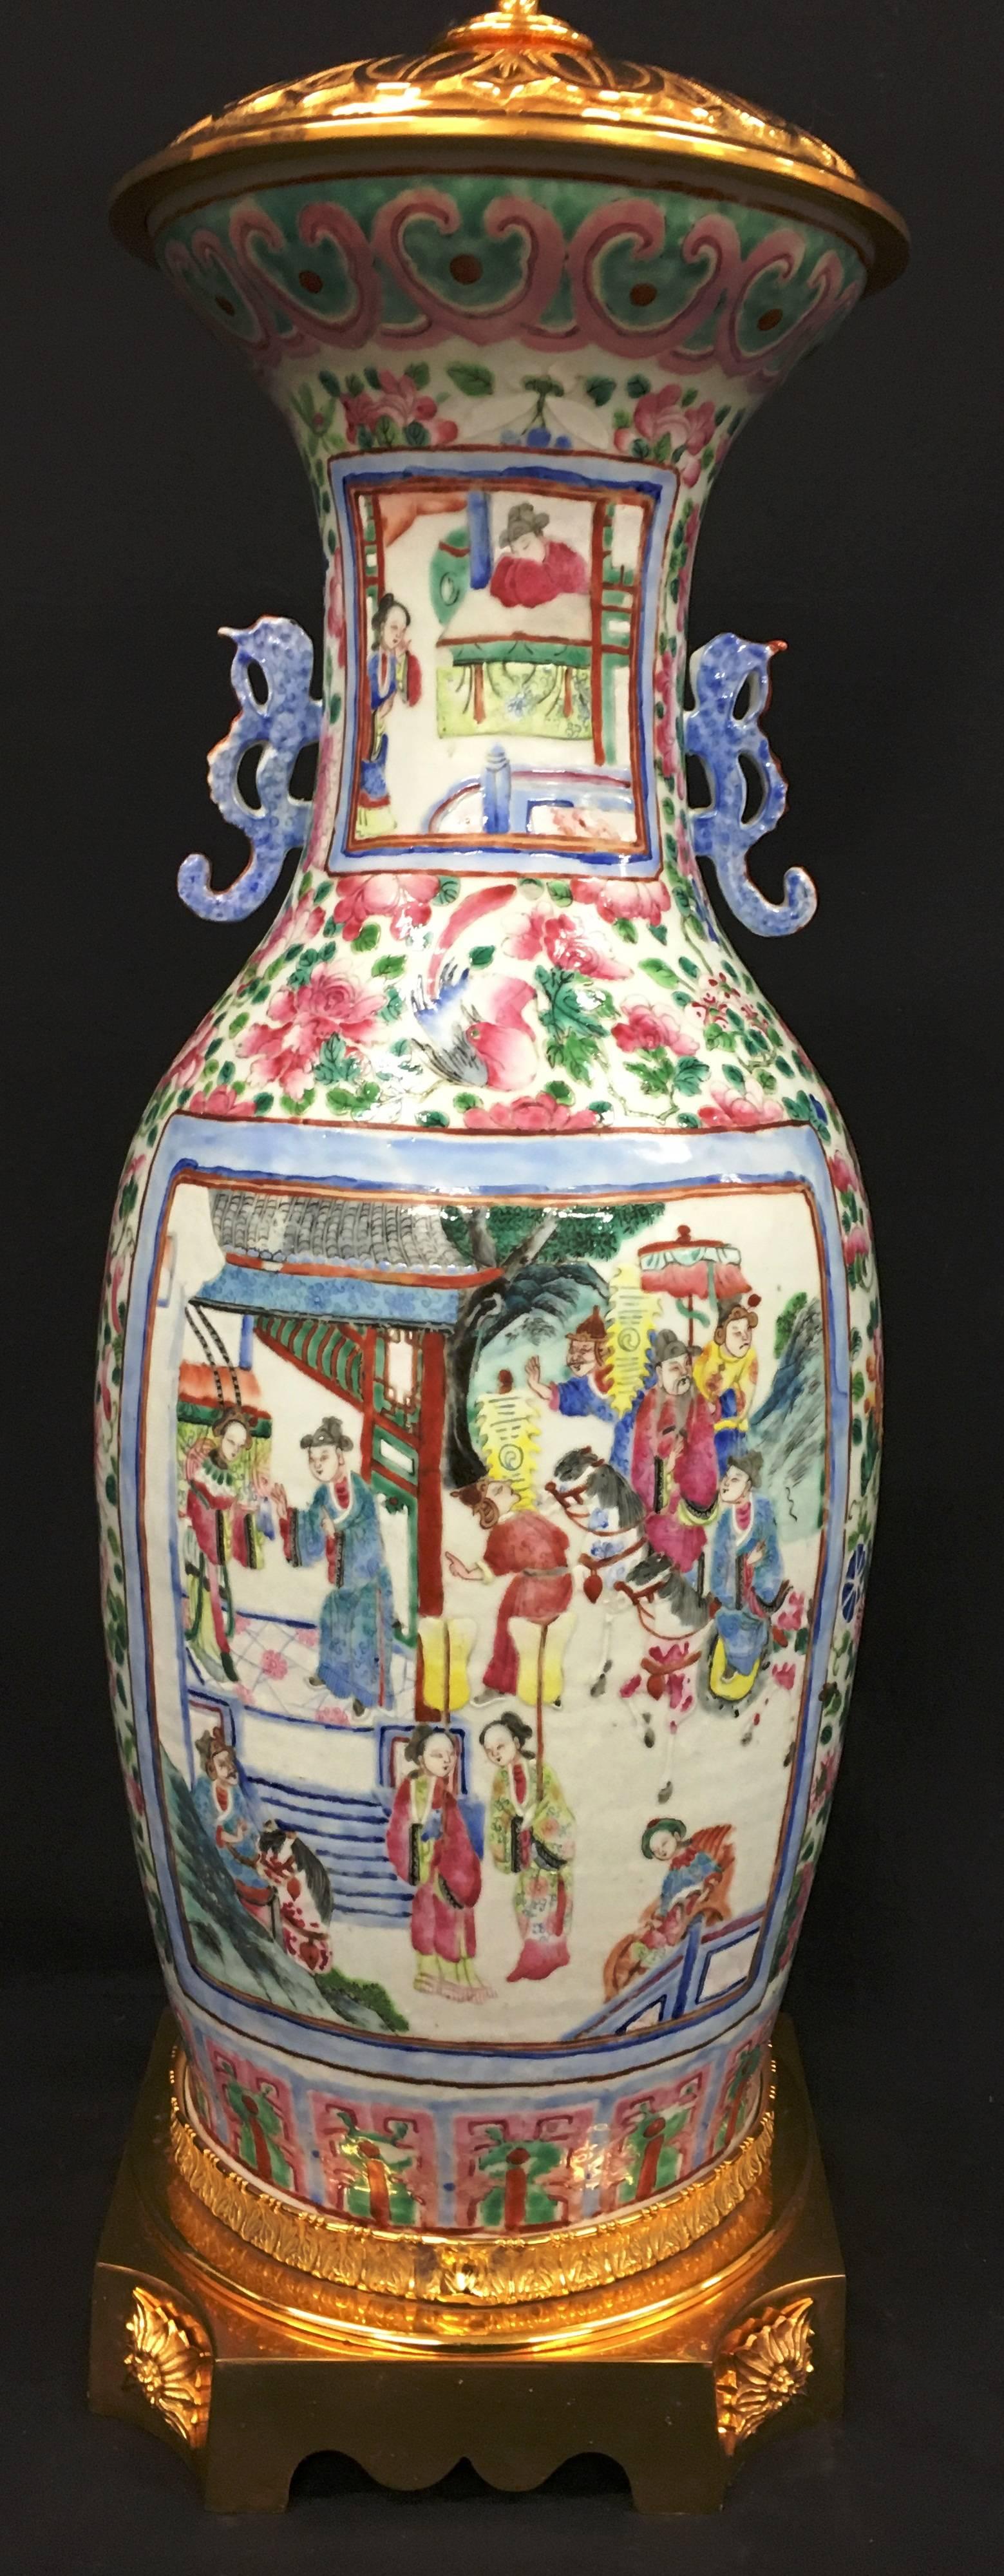 Un impressionnant vase ou lampe de la Famille rose chinoise du 19ème siècle. Les panneaux sont joliment peints et représentent des mortels dans un temple et des jardins, dans un cadre floral, avec des montures en bronze doré.